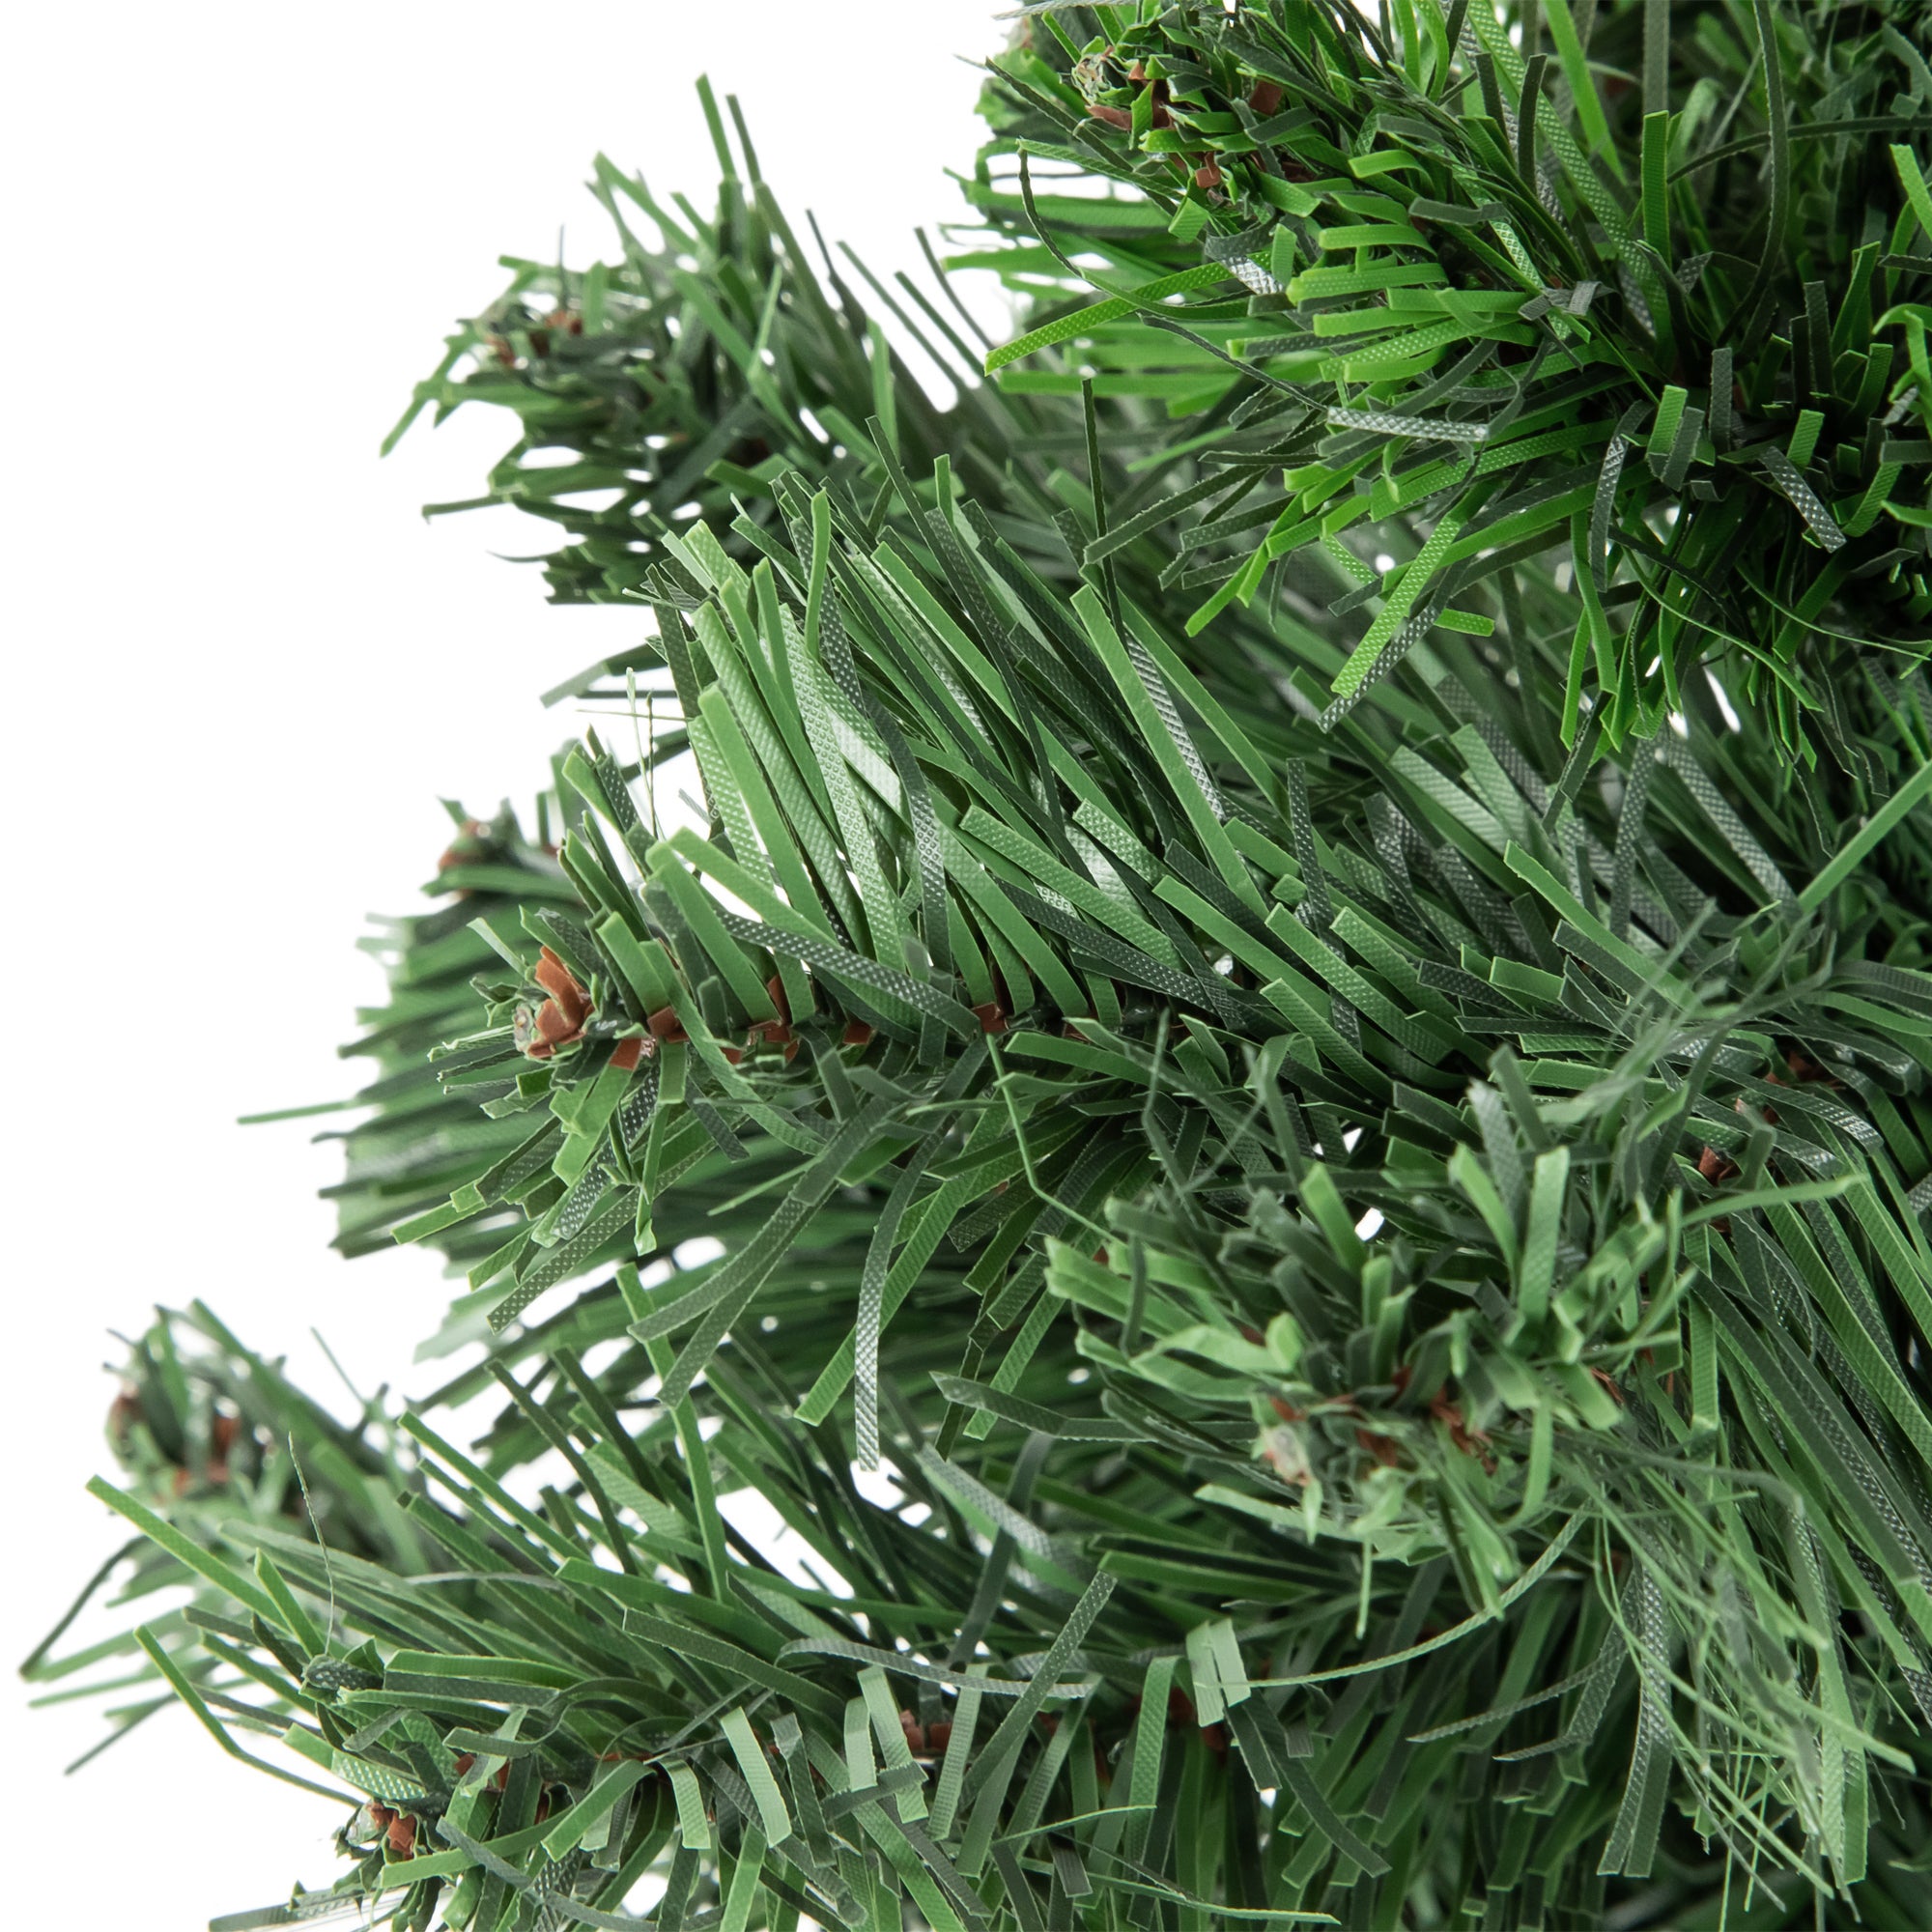 Mini Pine Medium Artificial Christmas Tree 18"